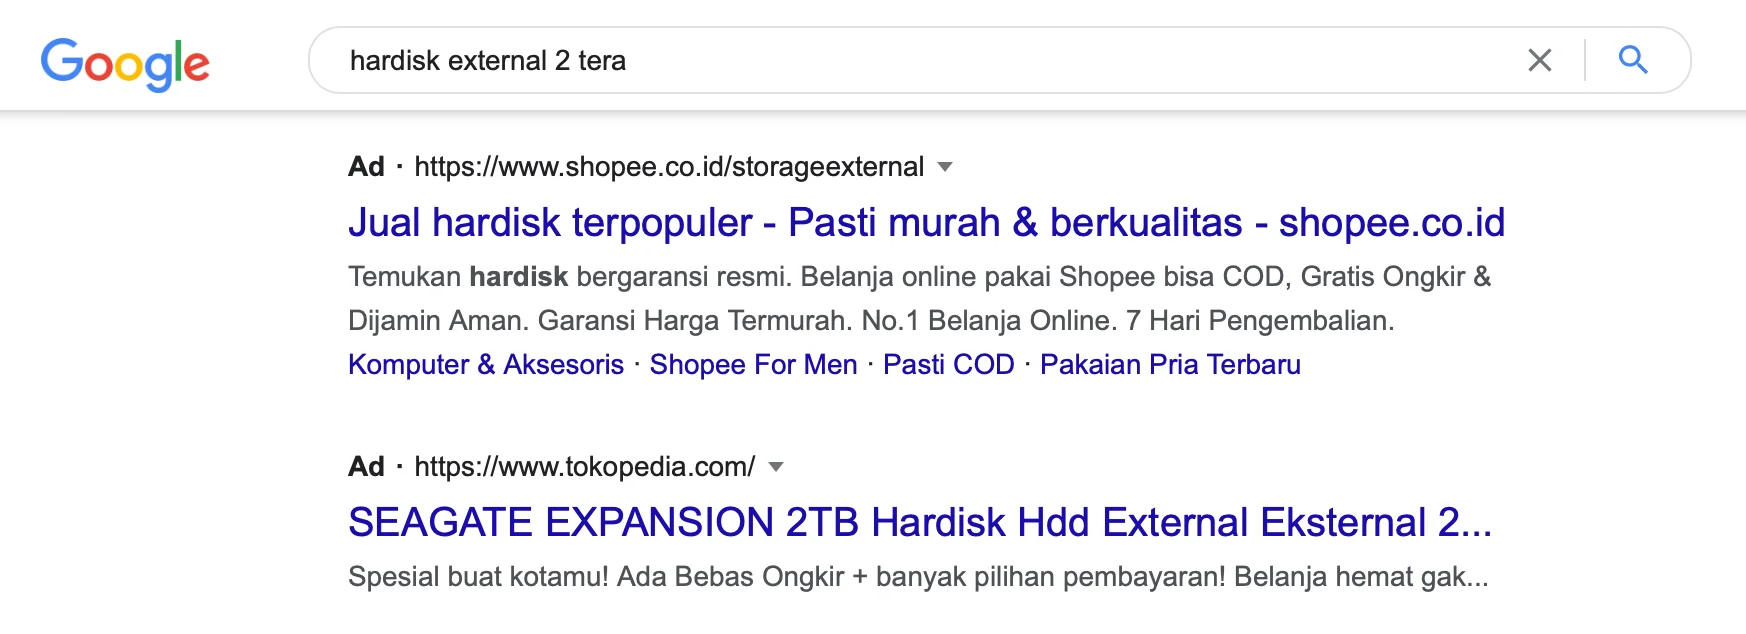 Iklan Google Hardisk External